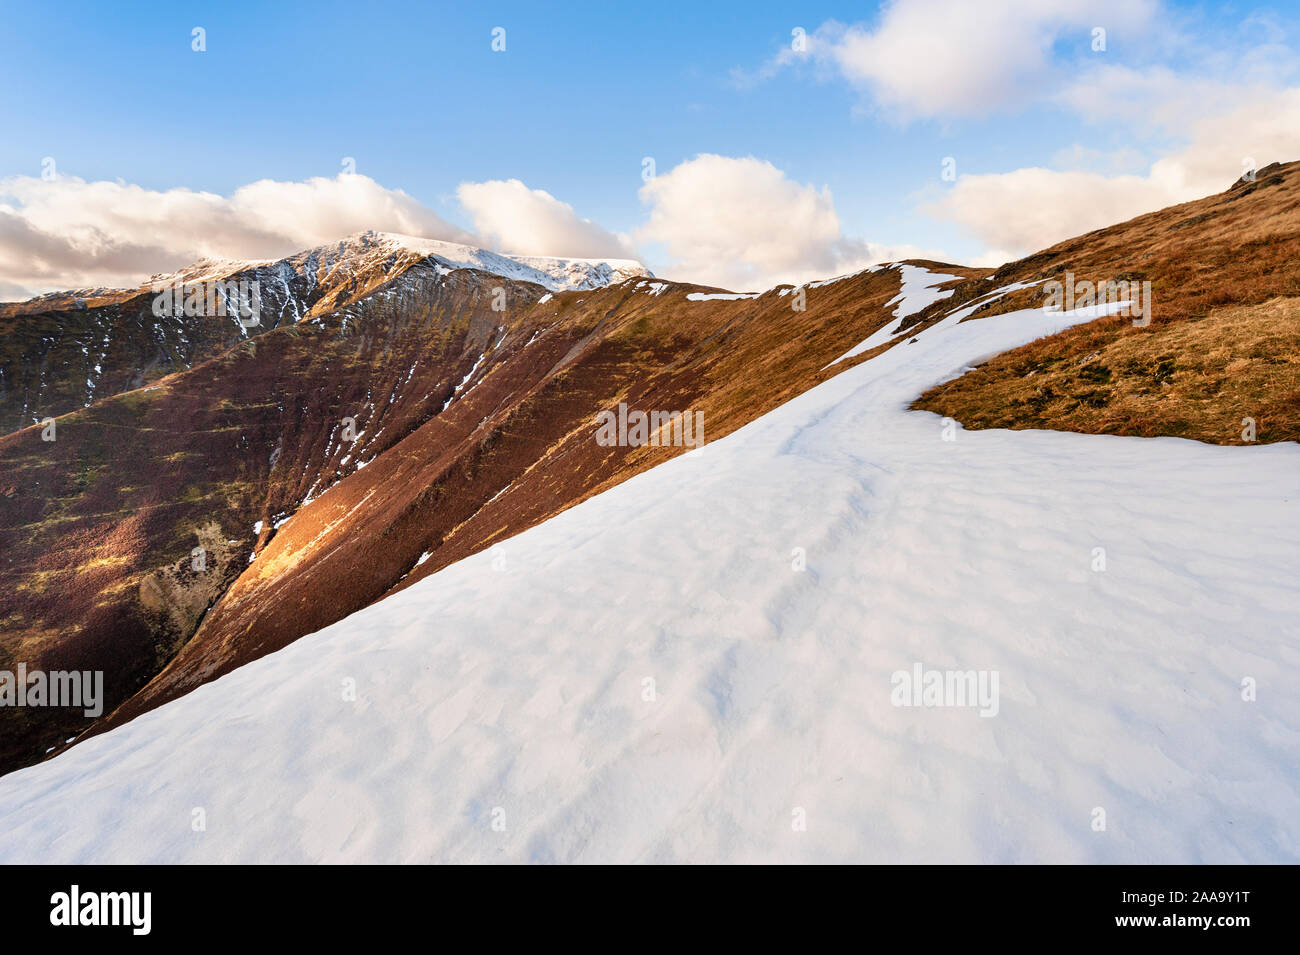 Winter Lake District paesaggio montano è sceso le scale che portano alla coperta di neve il vertice di Blencathra / a doppio spiovente uno del Lakeland Fells in Cumbria Foto Stock